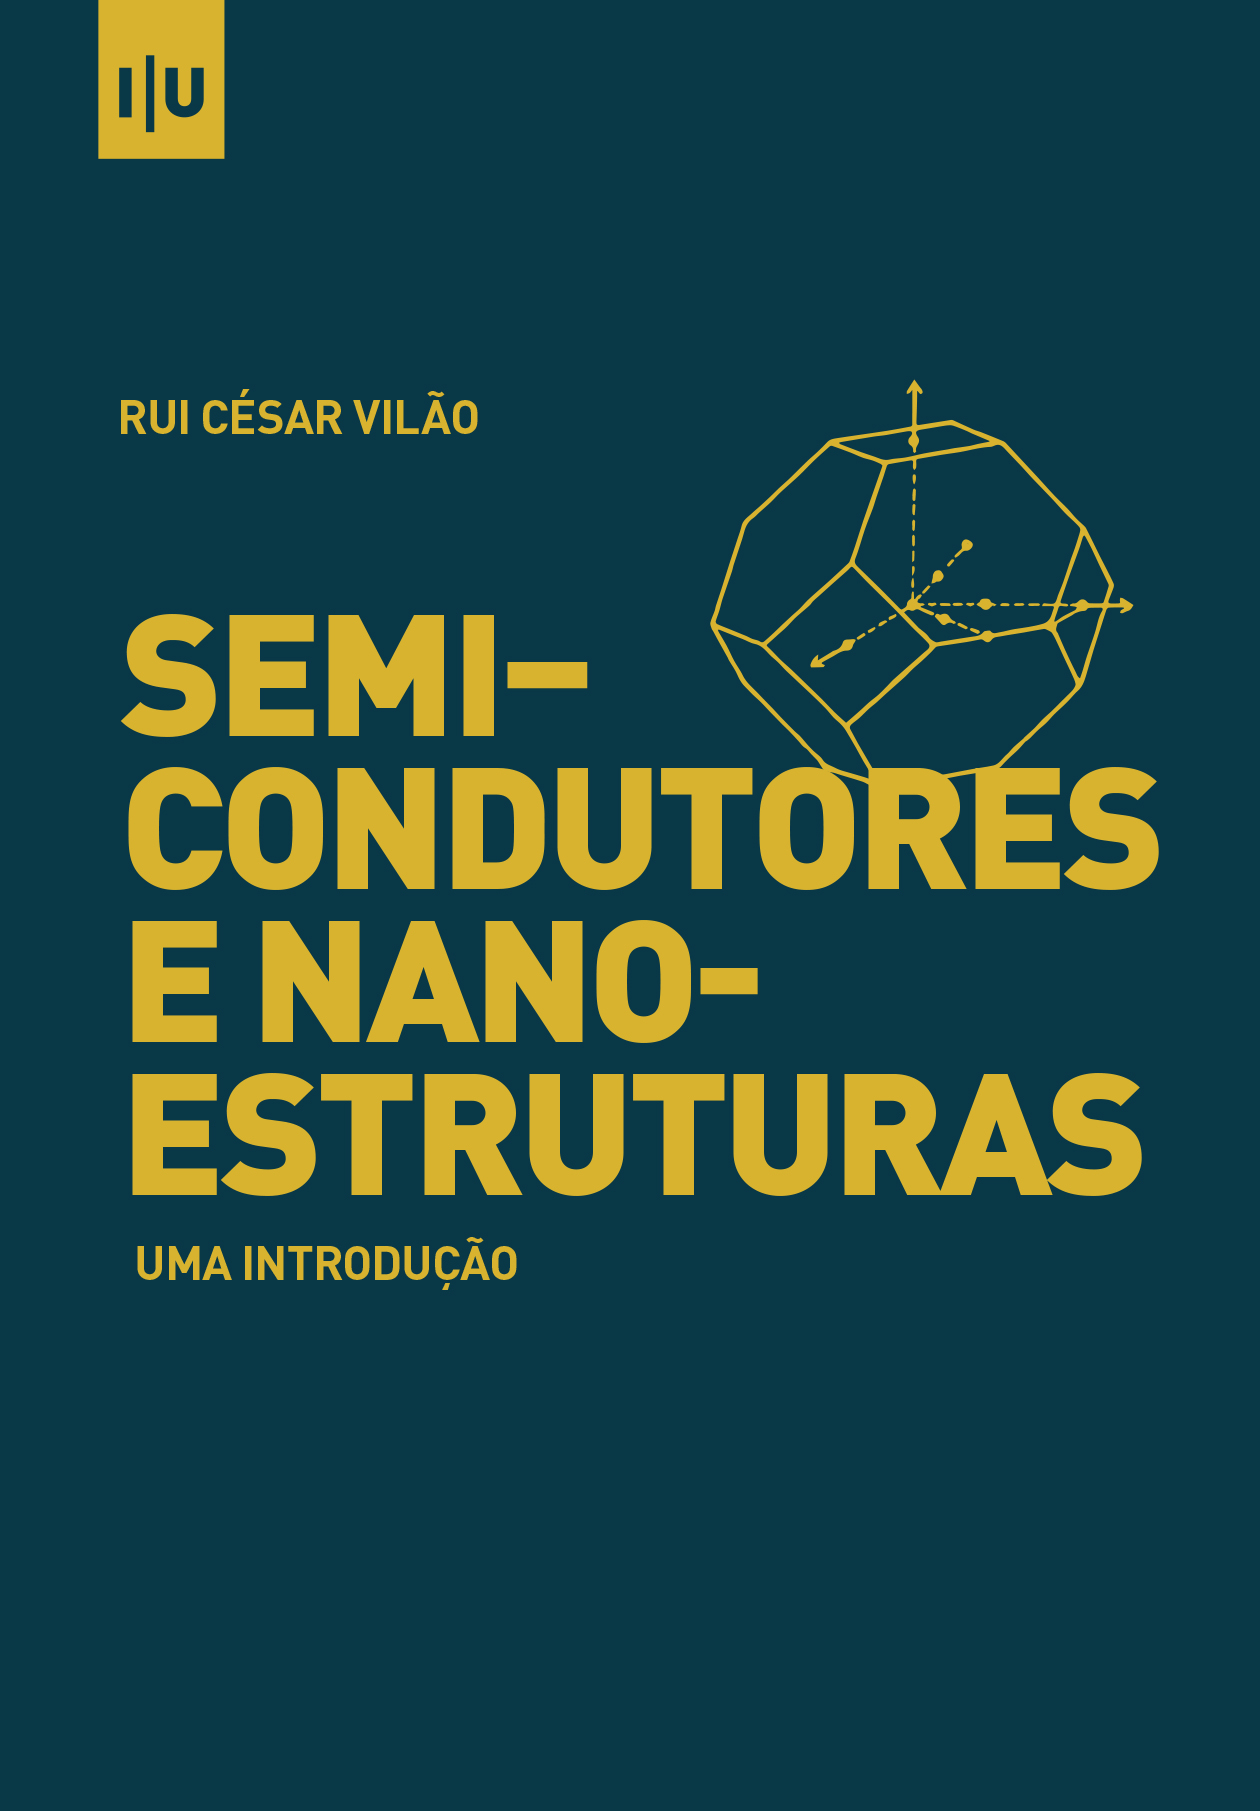 Semicondutores e nanoestruturas: uma introdução - Imprensa da Universidade de Coimbra (IUC)